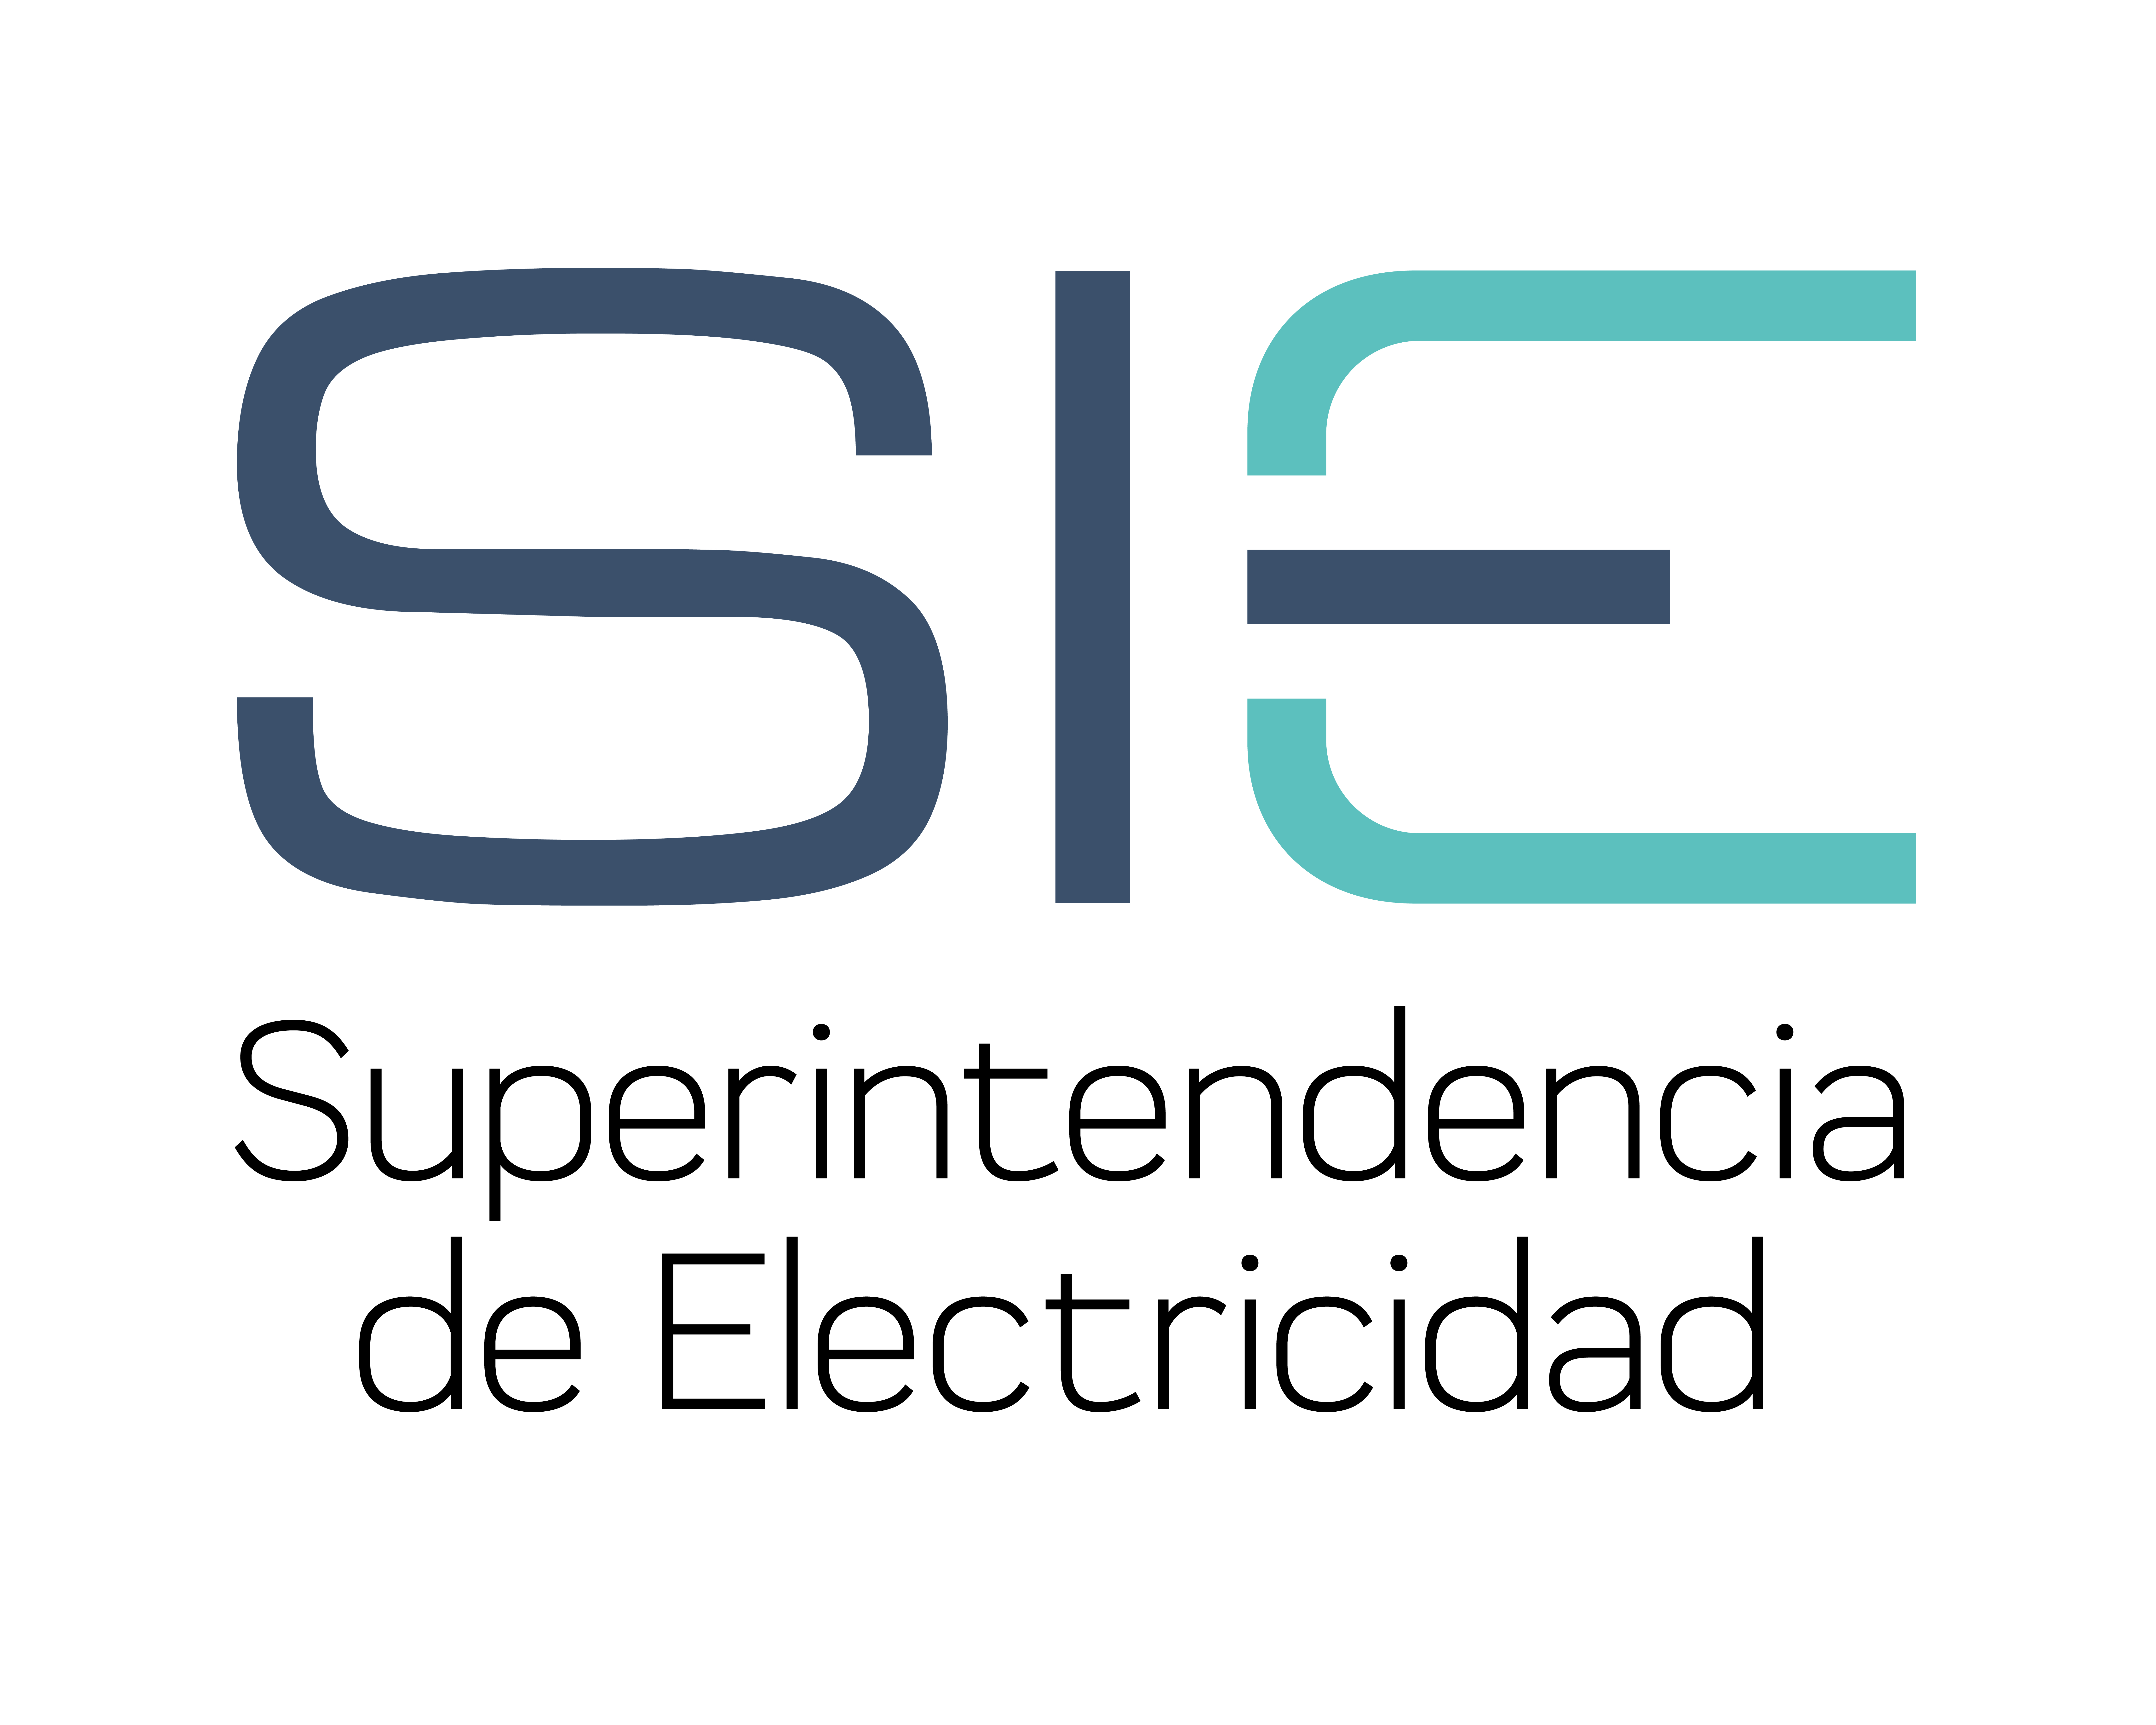 Superintendencia de Electricidad logo